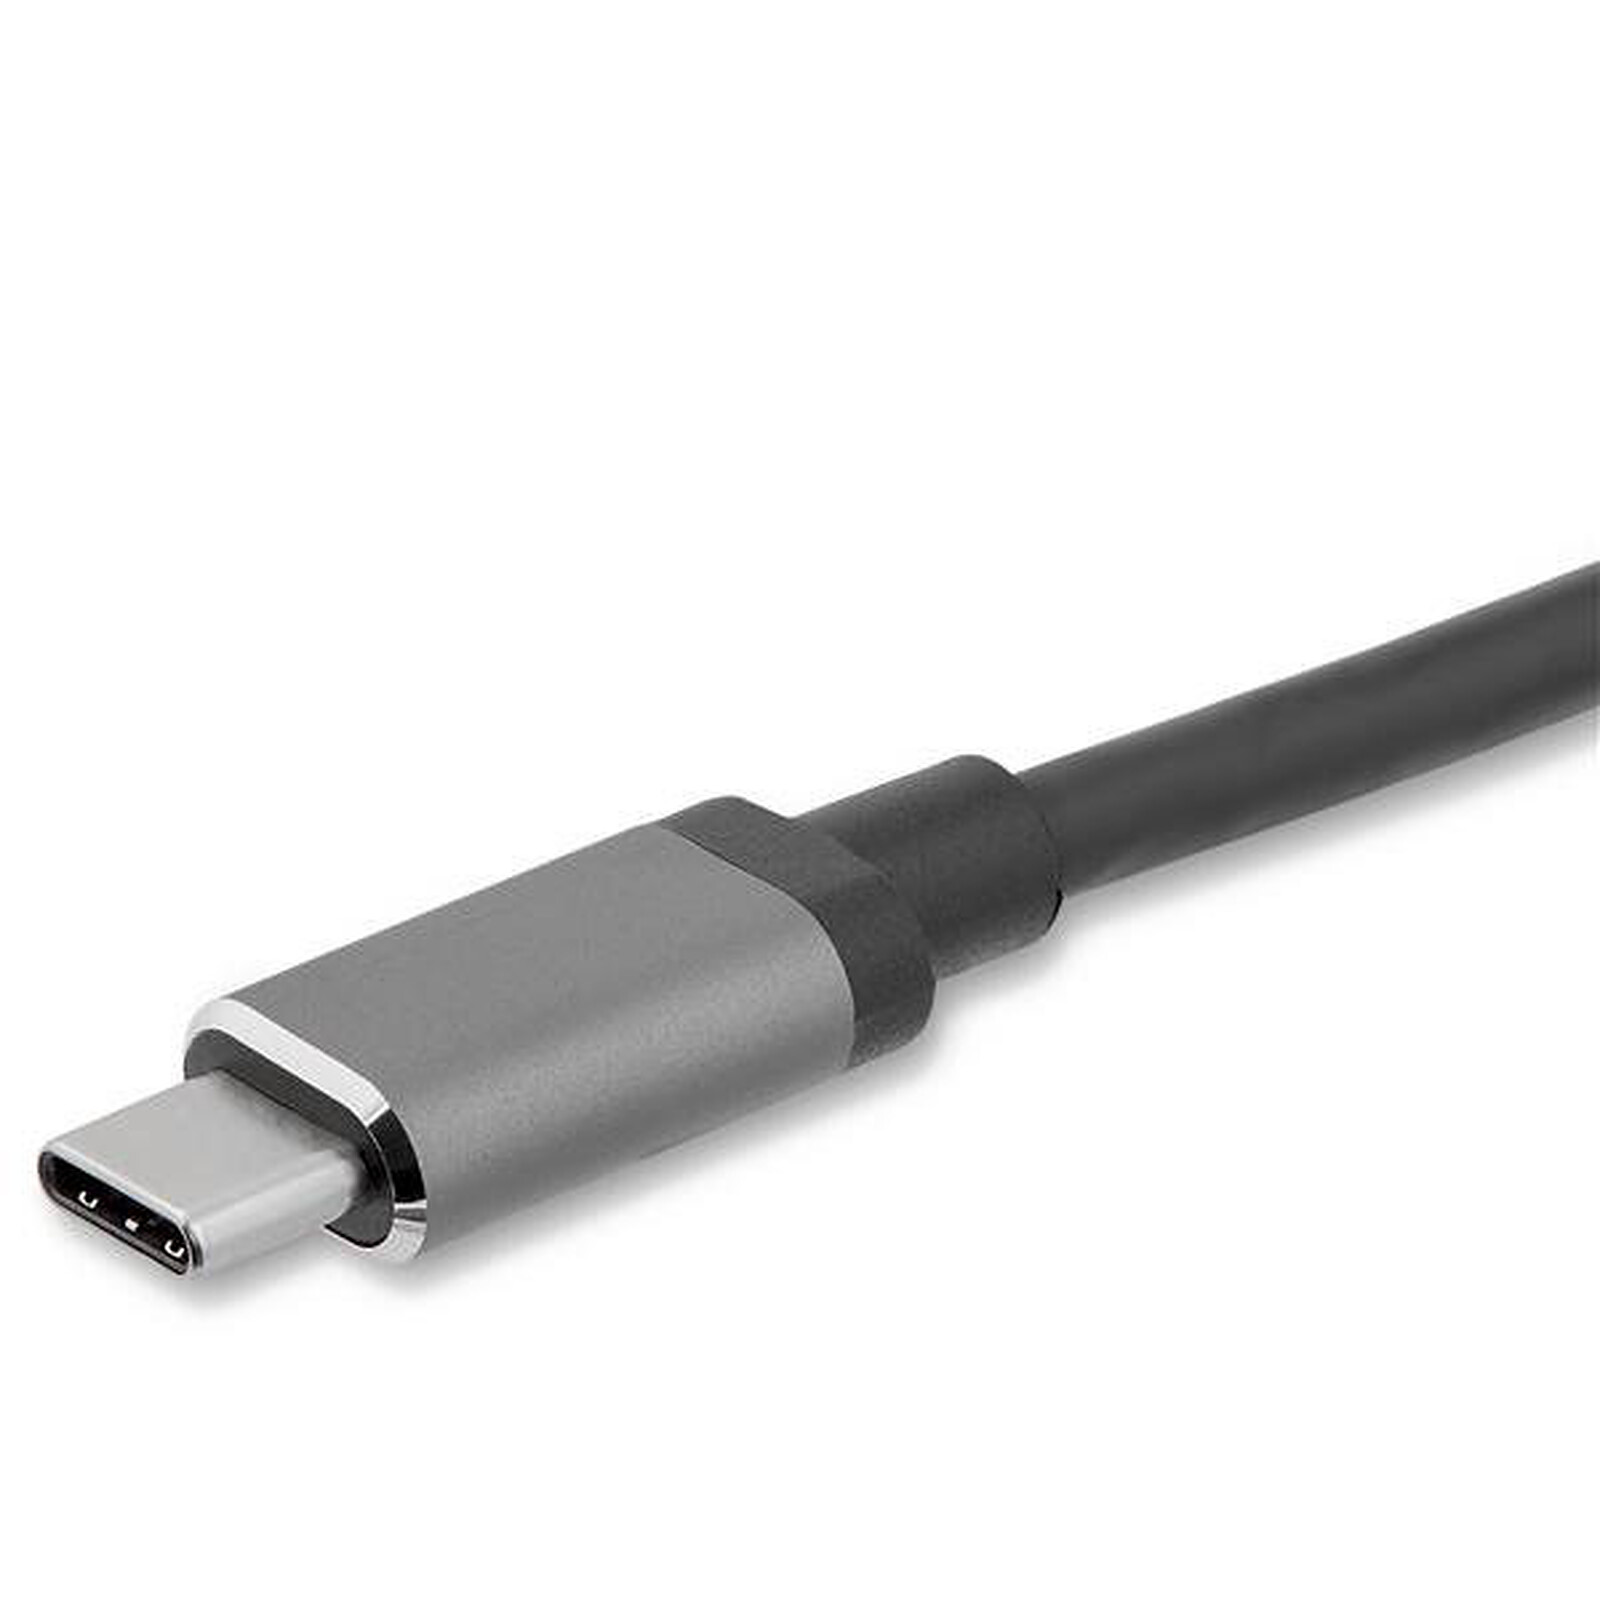 Apple Digital AV Adapter - adaptateur HDMI Pas Cher